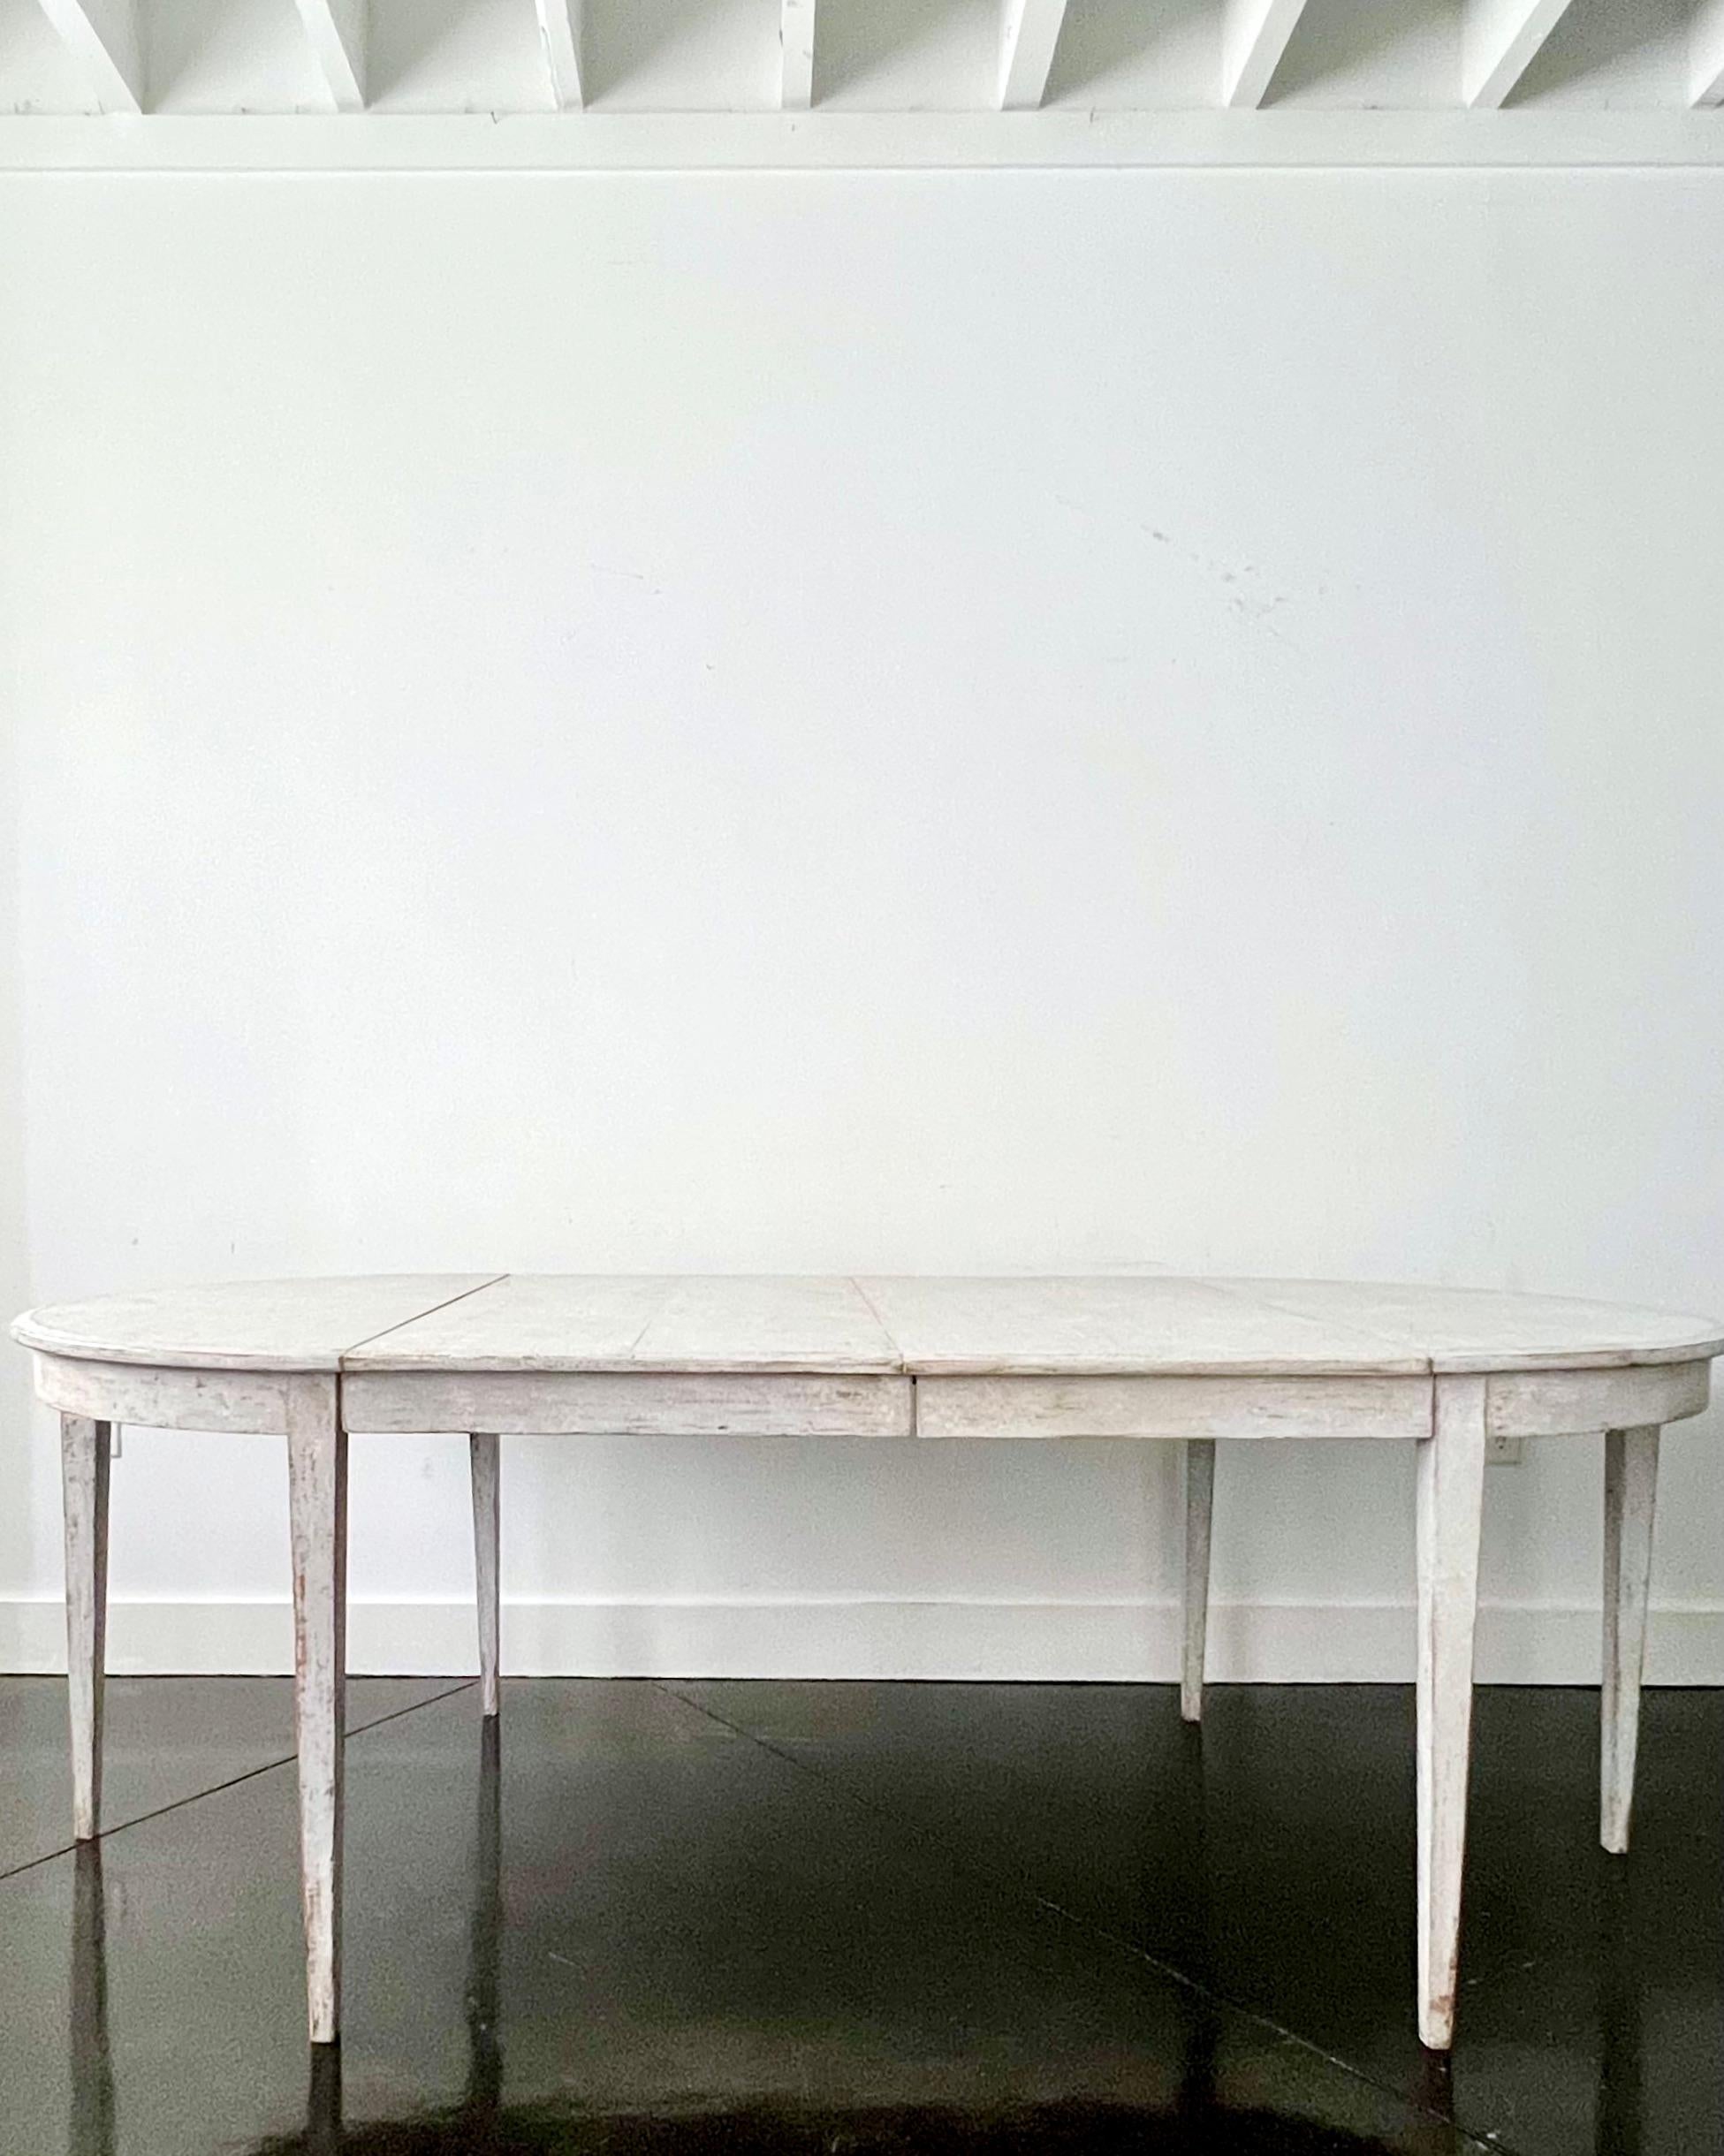 Table à rallonge d'époque gustavienne peinte au début du 19e siècle, avec deux feuilles et des pieds fuselés. Une pièce pratique qui peut être utilisée comme table ronde ou allongée avec une ou deux feuilles jusqu'à 90